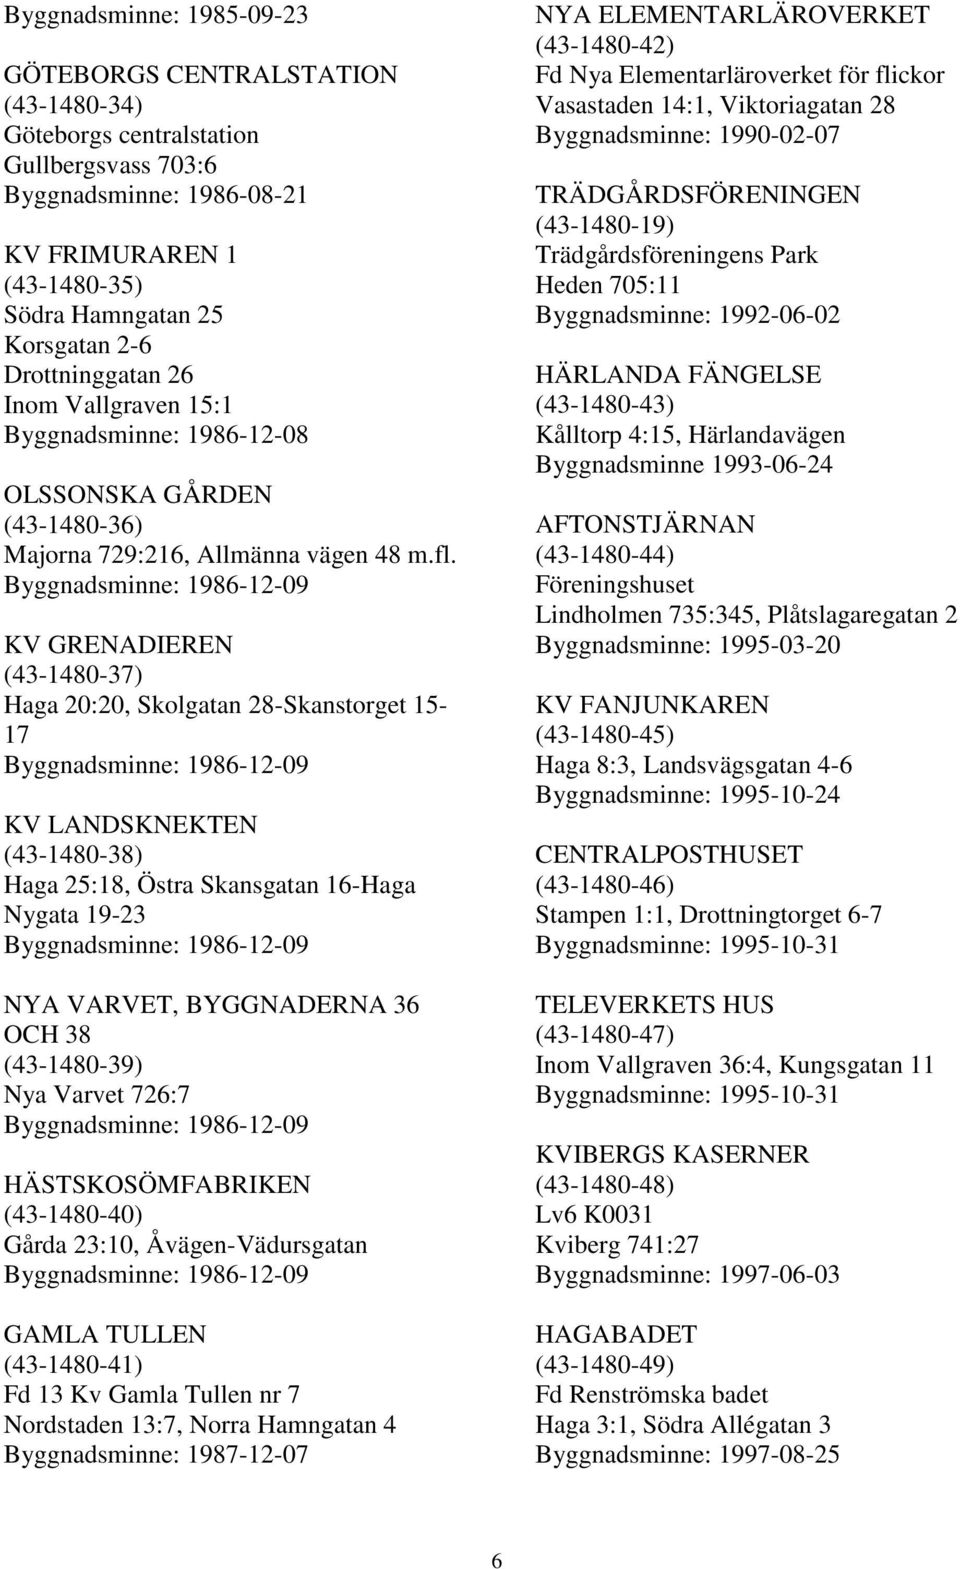 Byggnadsminne: 1986-12-09 KV GRENADIEREN (43-1480-37) Haga 20:20, Skolgatan 28-Skanstorget 15-17 Byggnadsminne: 1986-12-09 KV LANDSKNEKTEN (43-1480-38) Haga 25:18, Östra Skansgatan 16-Haga Nygata